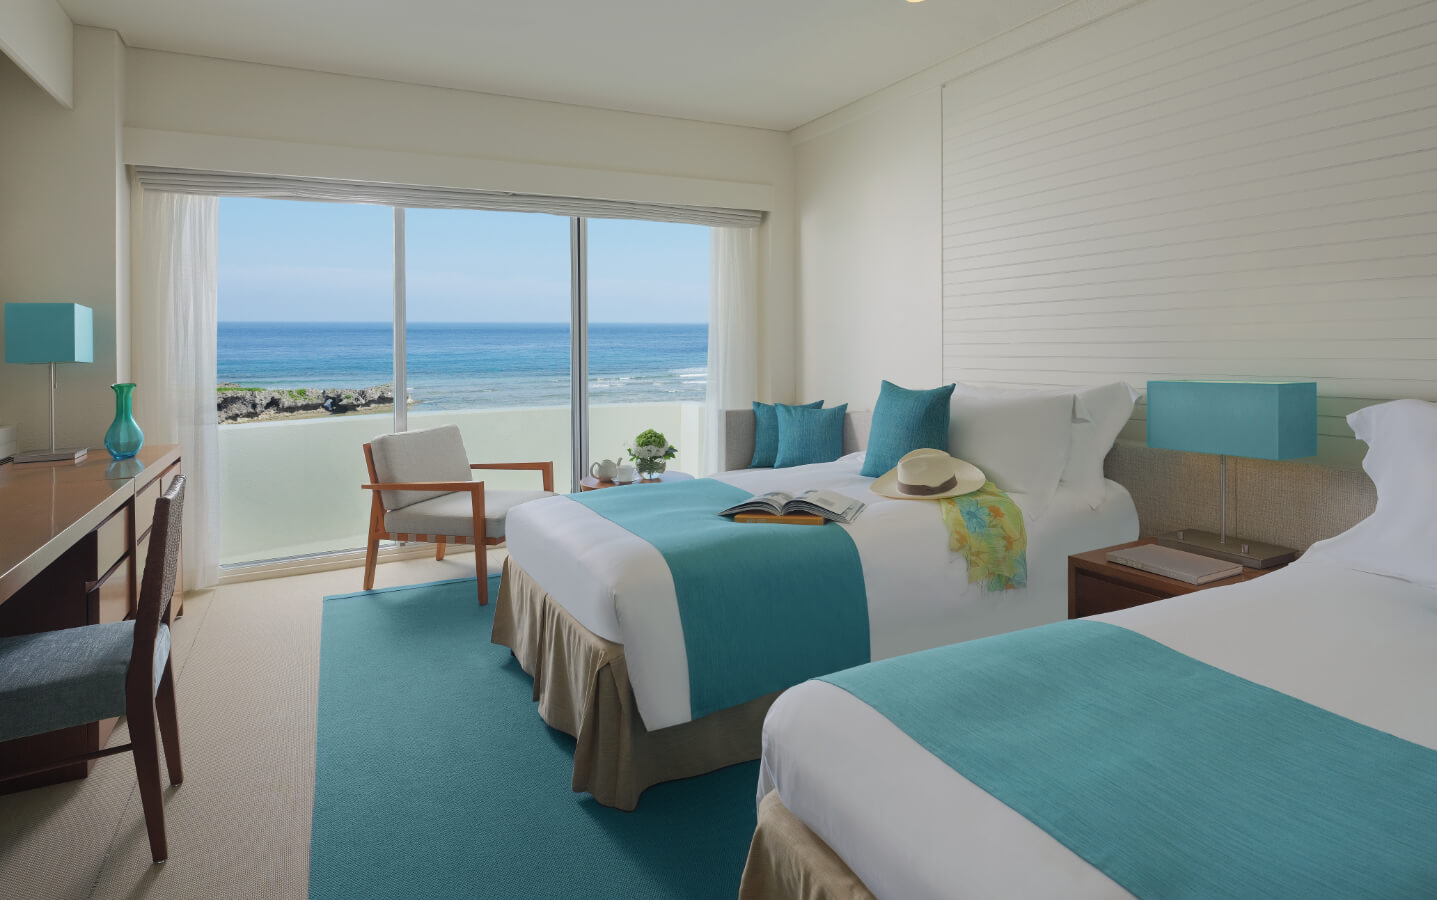 「ANAインターコンチネンタル万座ビーチリゾート」輝く海に包まれた贅沢なホテル 沖縄の観光情報はFeel Okinawa